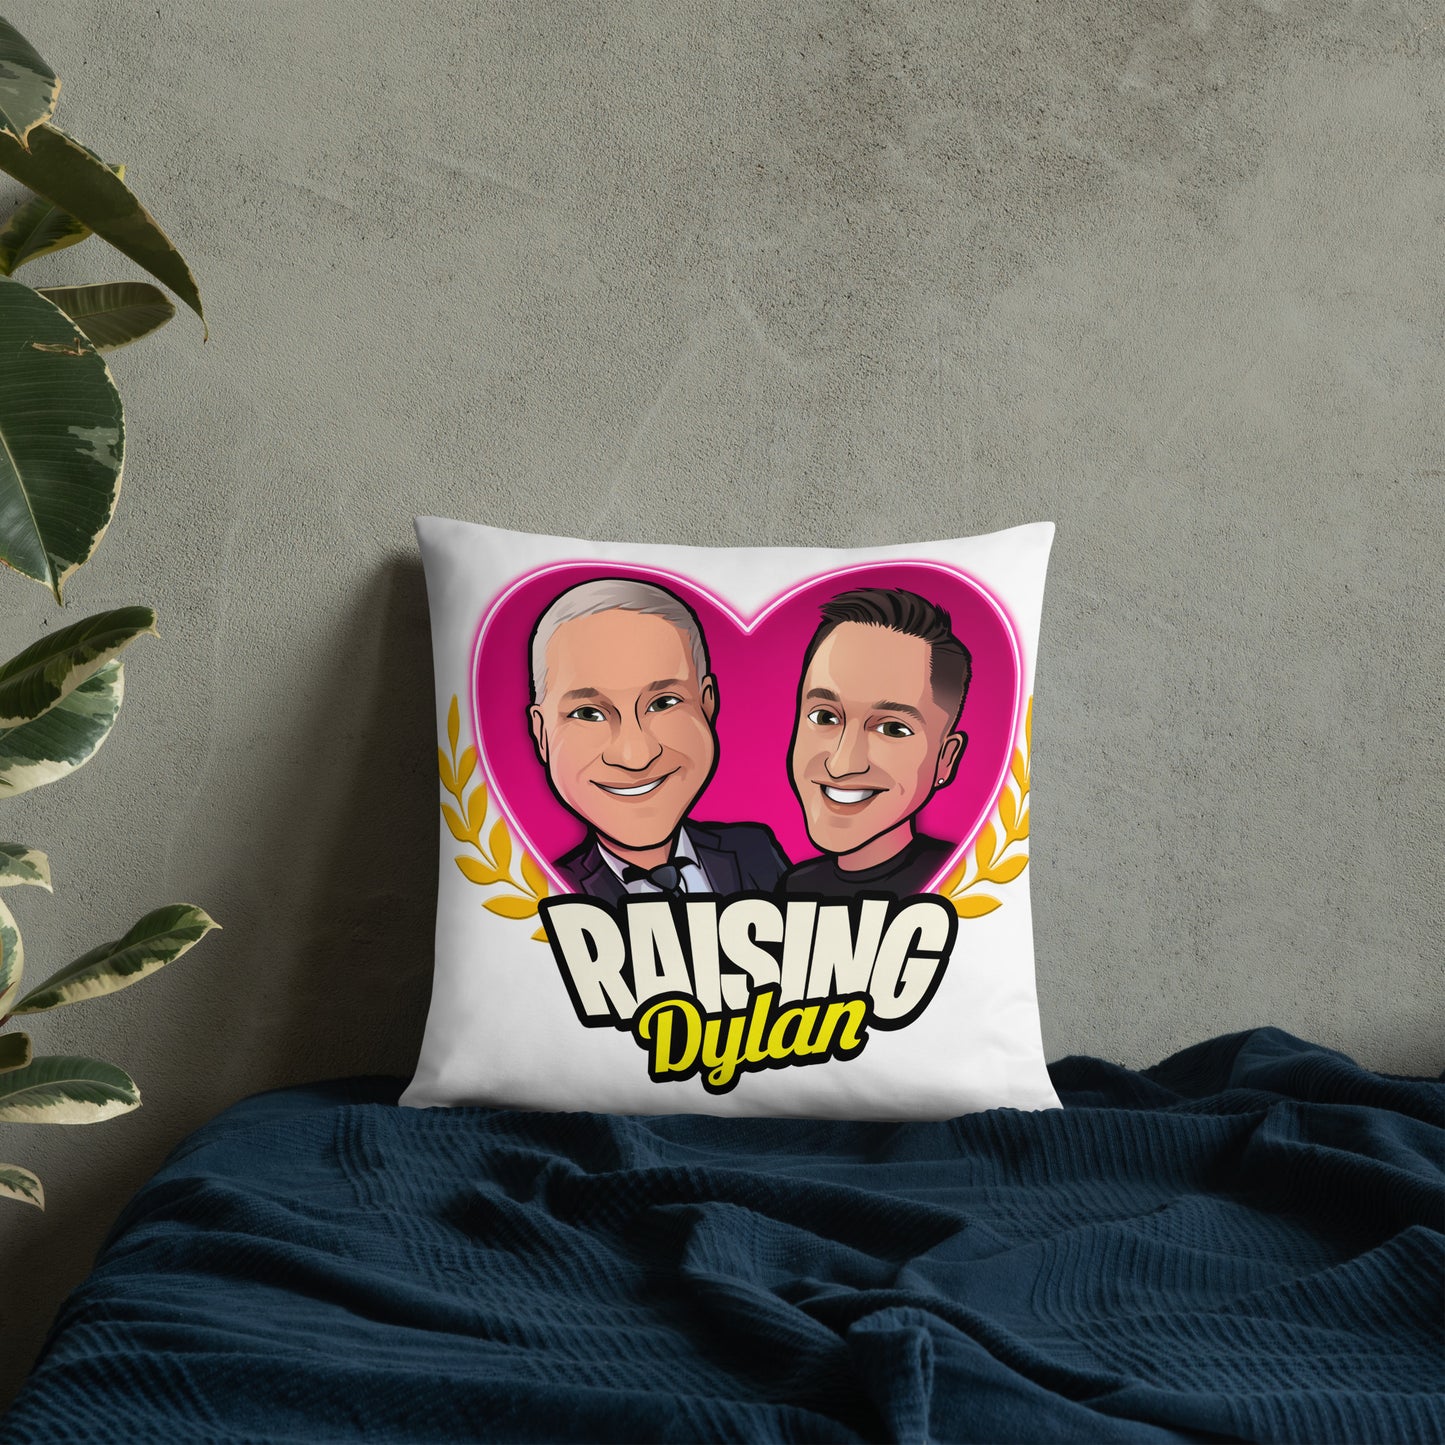 Raising Dylan Basic Pillow